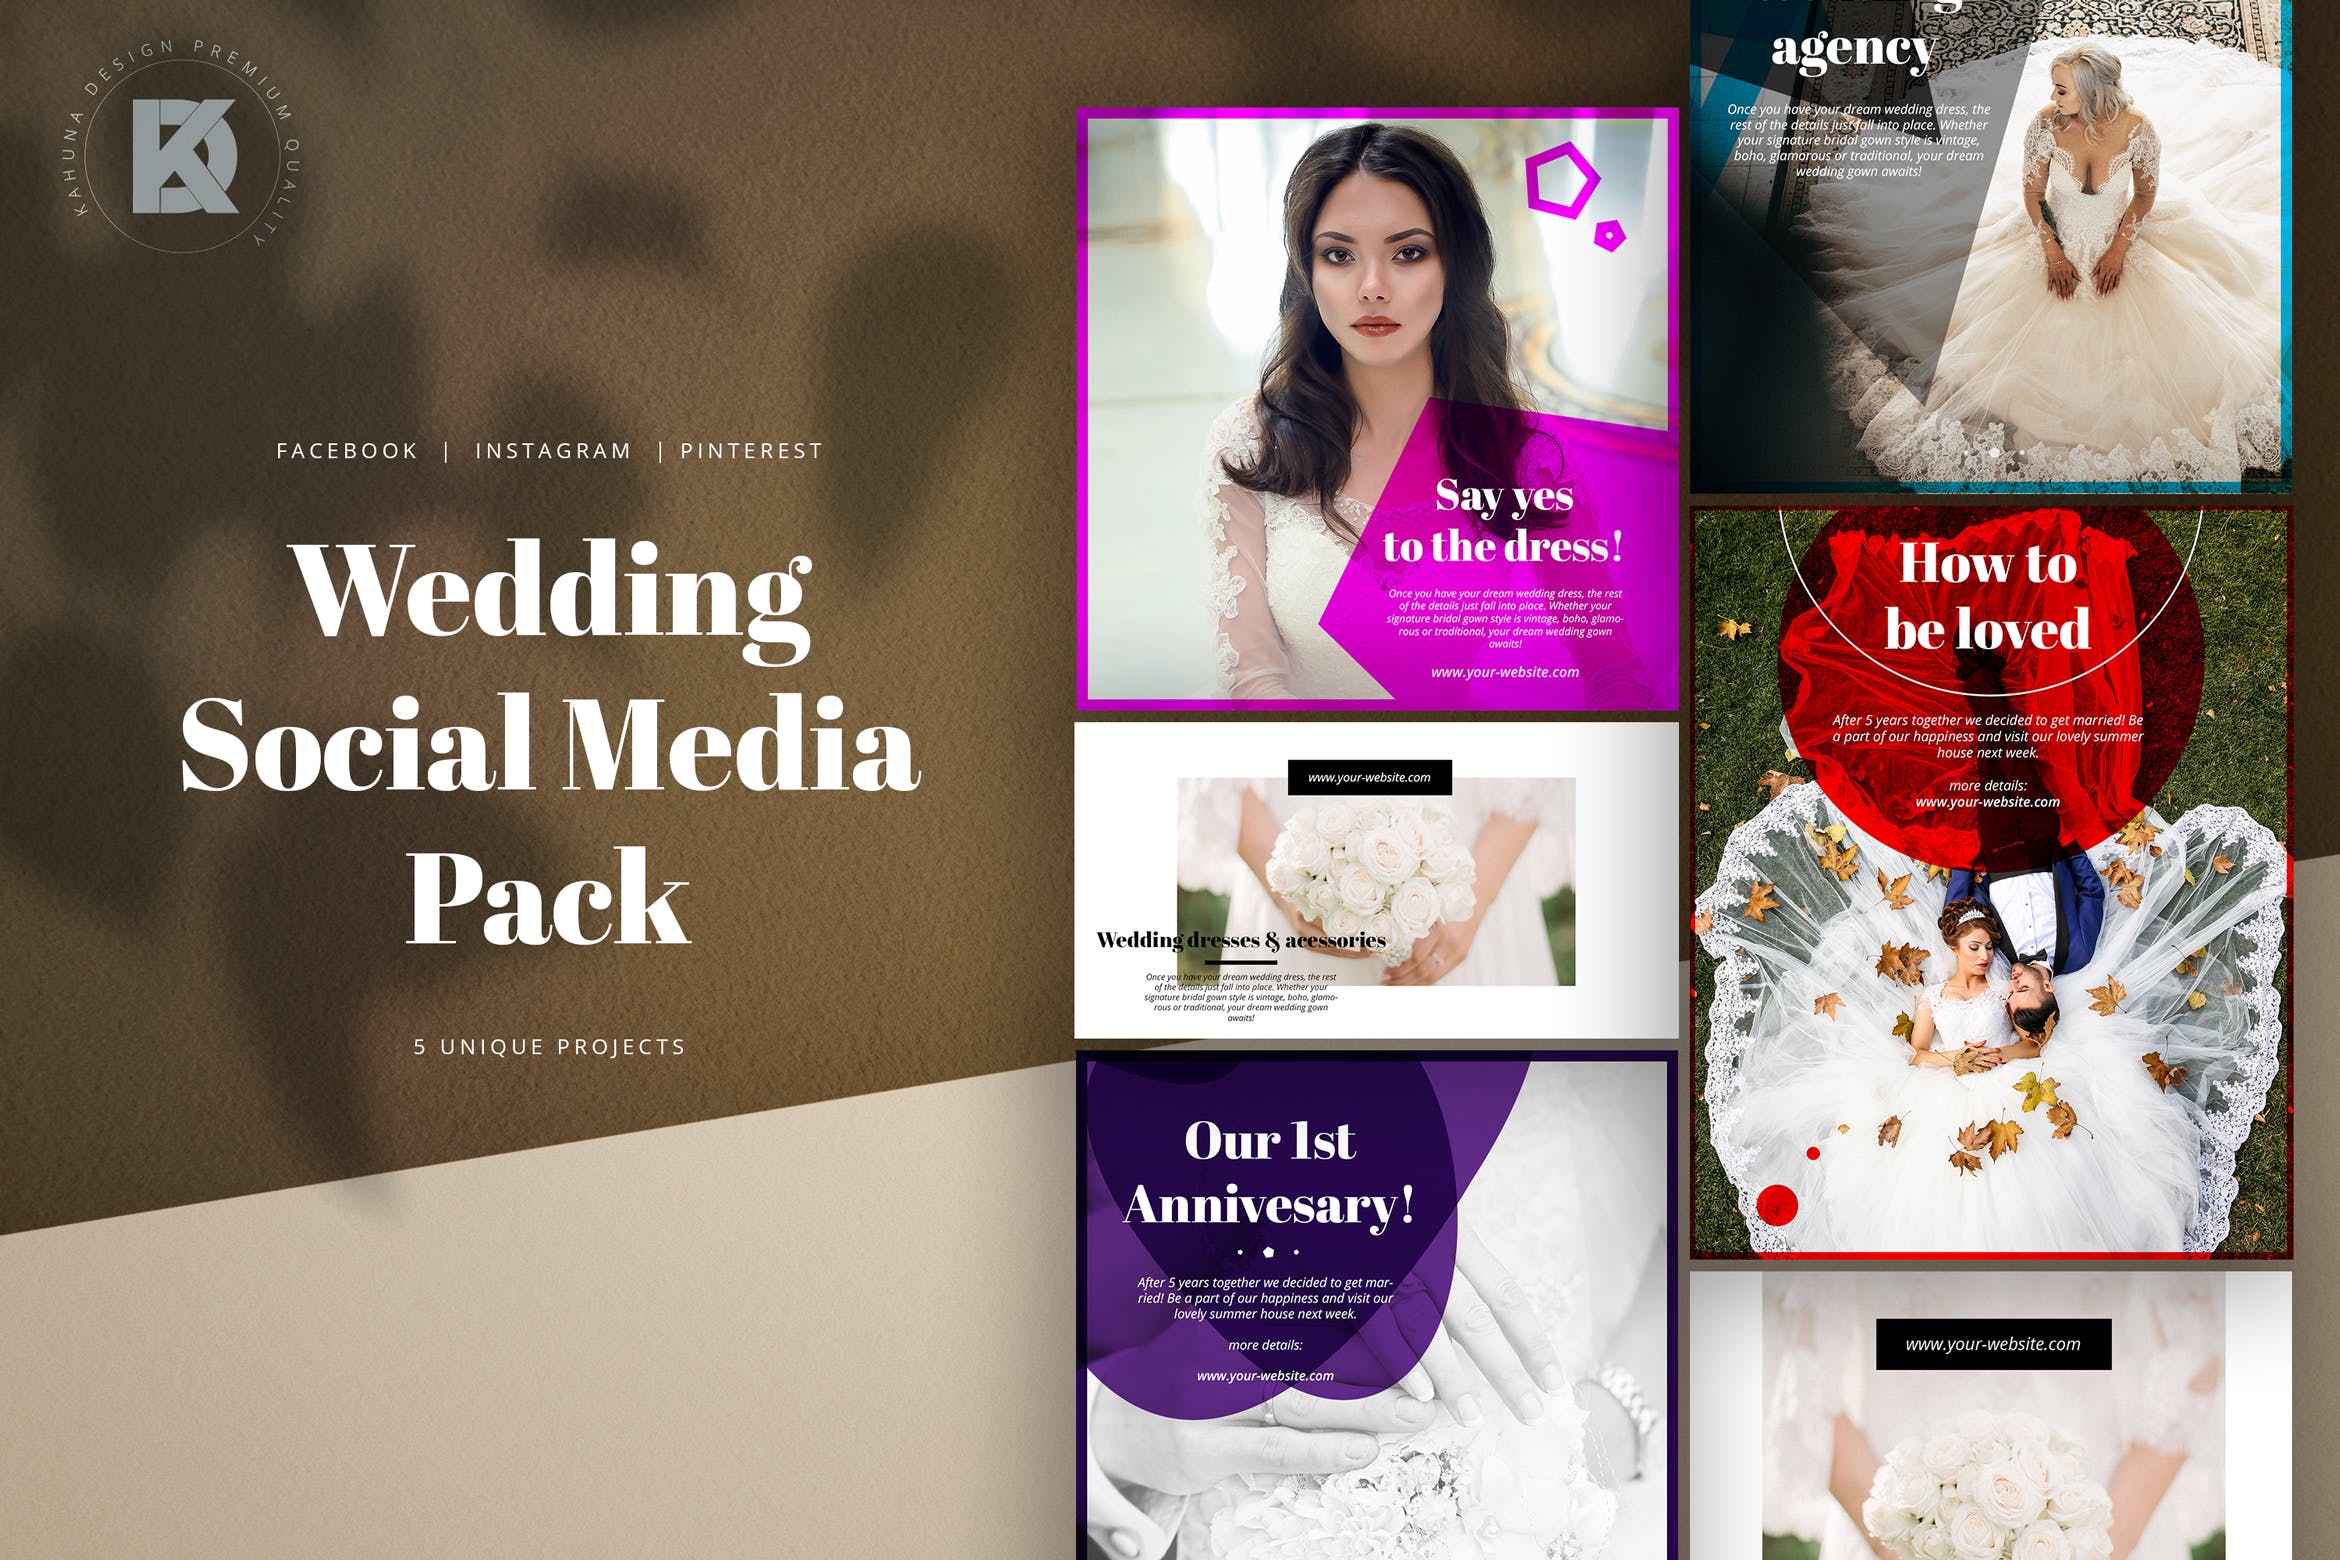 婚礼婚宴邀请社交媒体设计模板第一素材精选 Wedding Social Media Kit插图